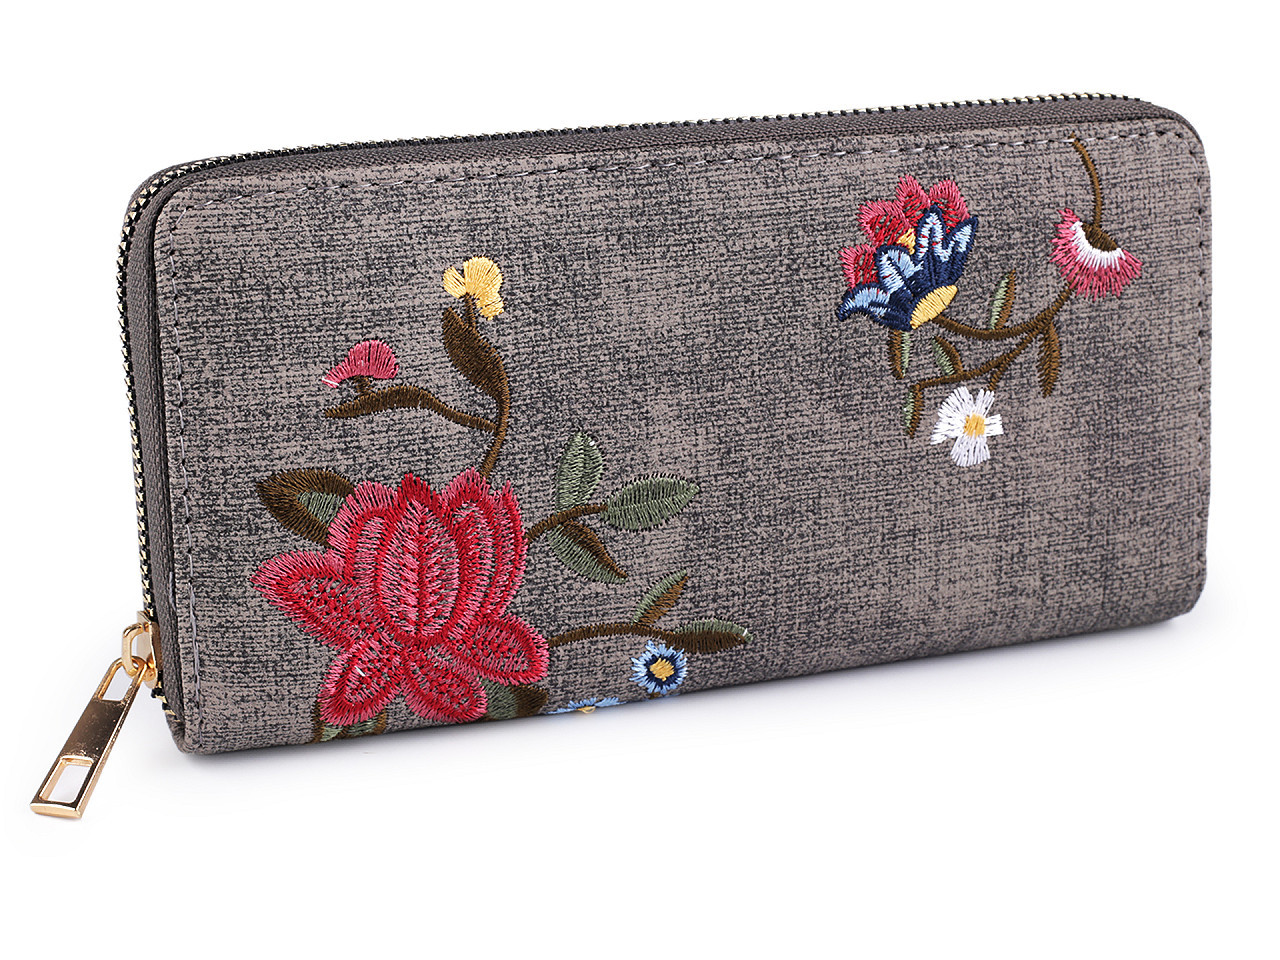 Dámská peněženka s vyšívanými květy 9,5x19 cm, barva 2 šedá střední